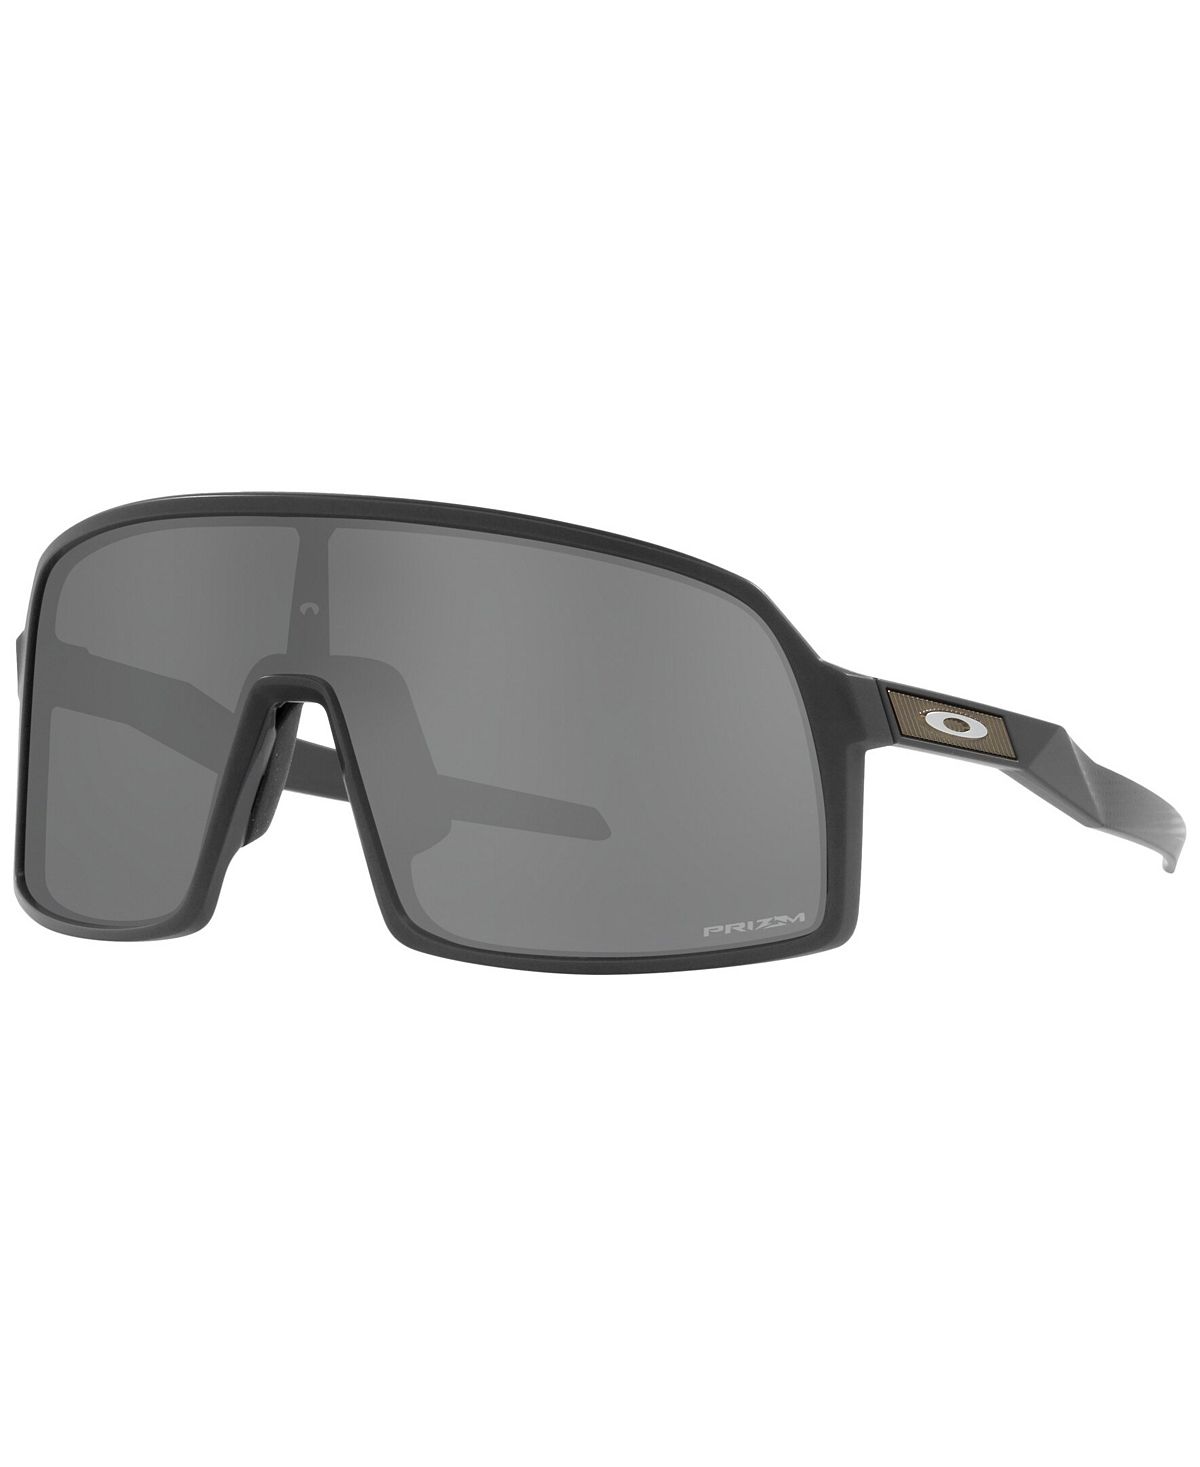 Мужские солнцезащитные очки, OO9462 Sutro S, коллекция высокого разрешения Oakley